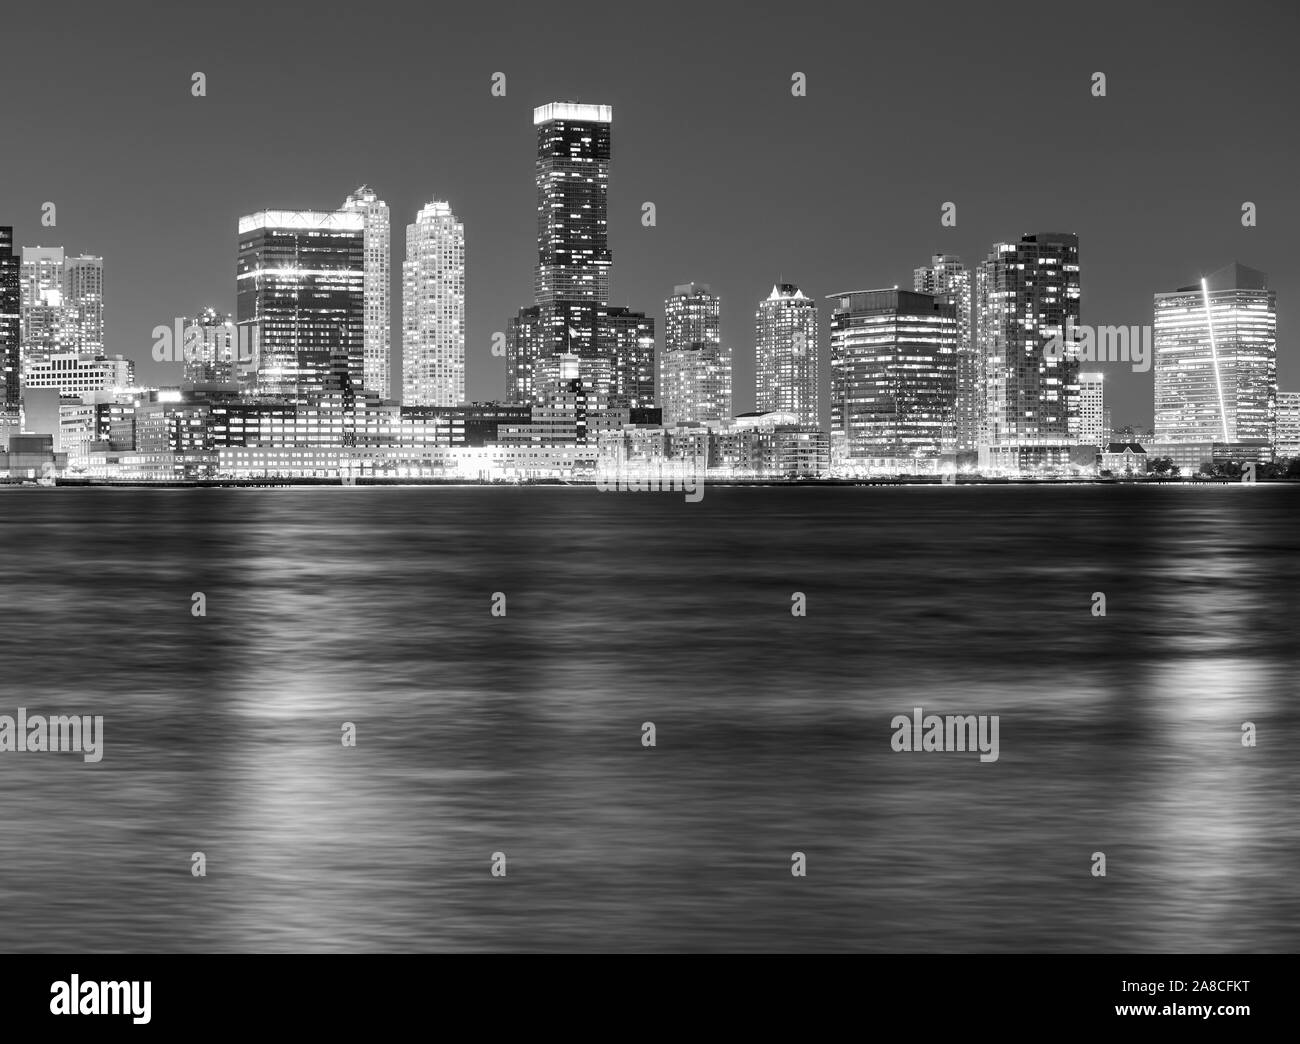 Immagine in bianco e nero di Jersey City skyline notturno, STATI UNITI D'AMERICA. Foto Stock